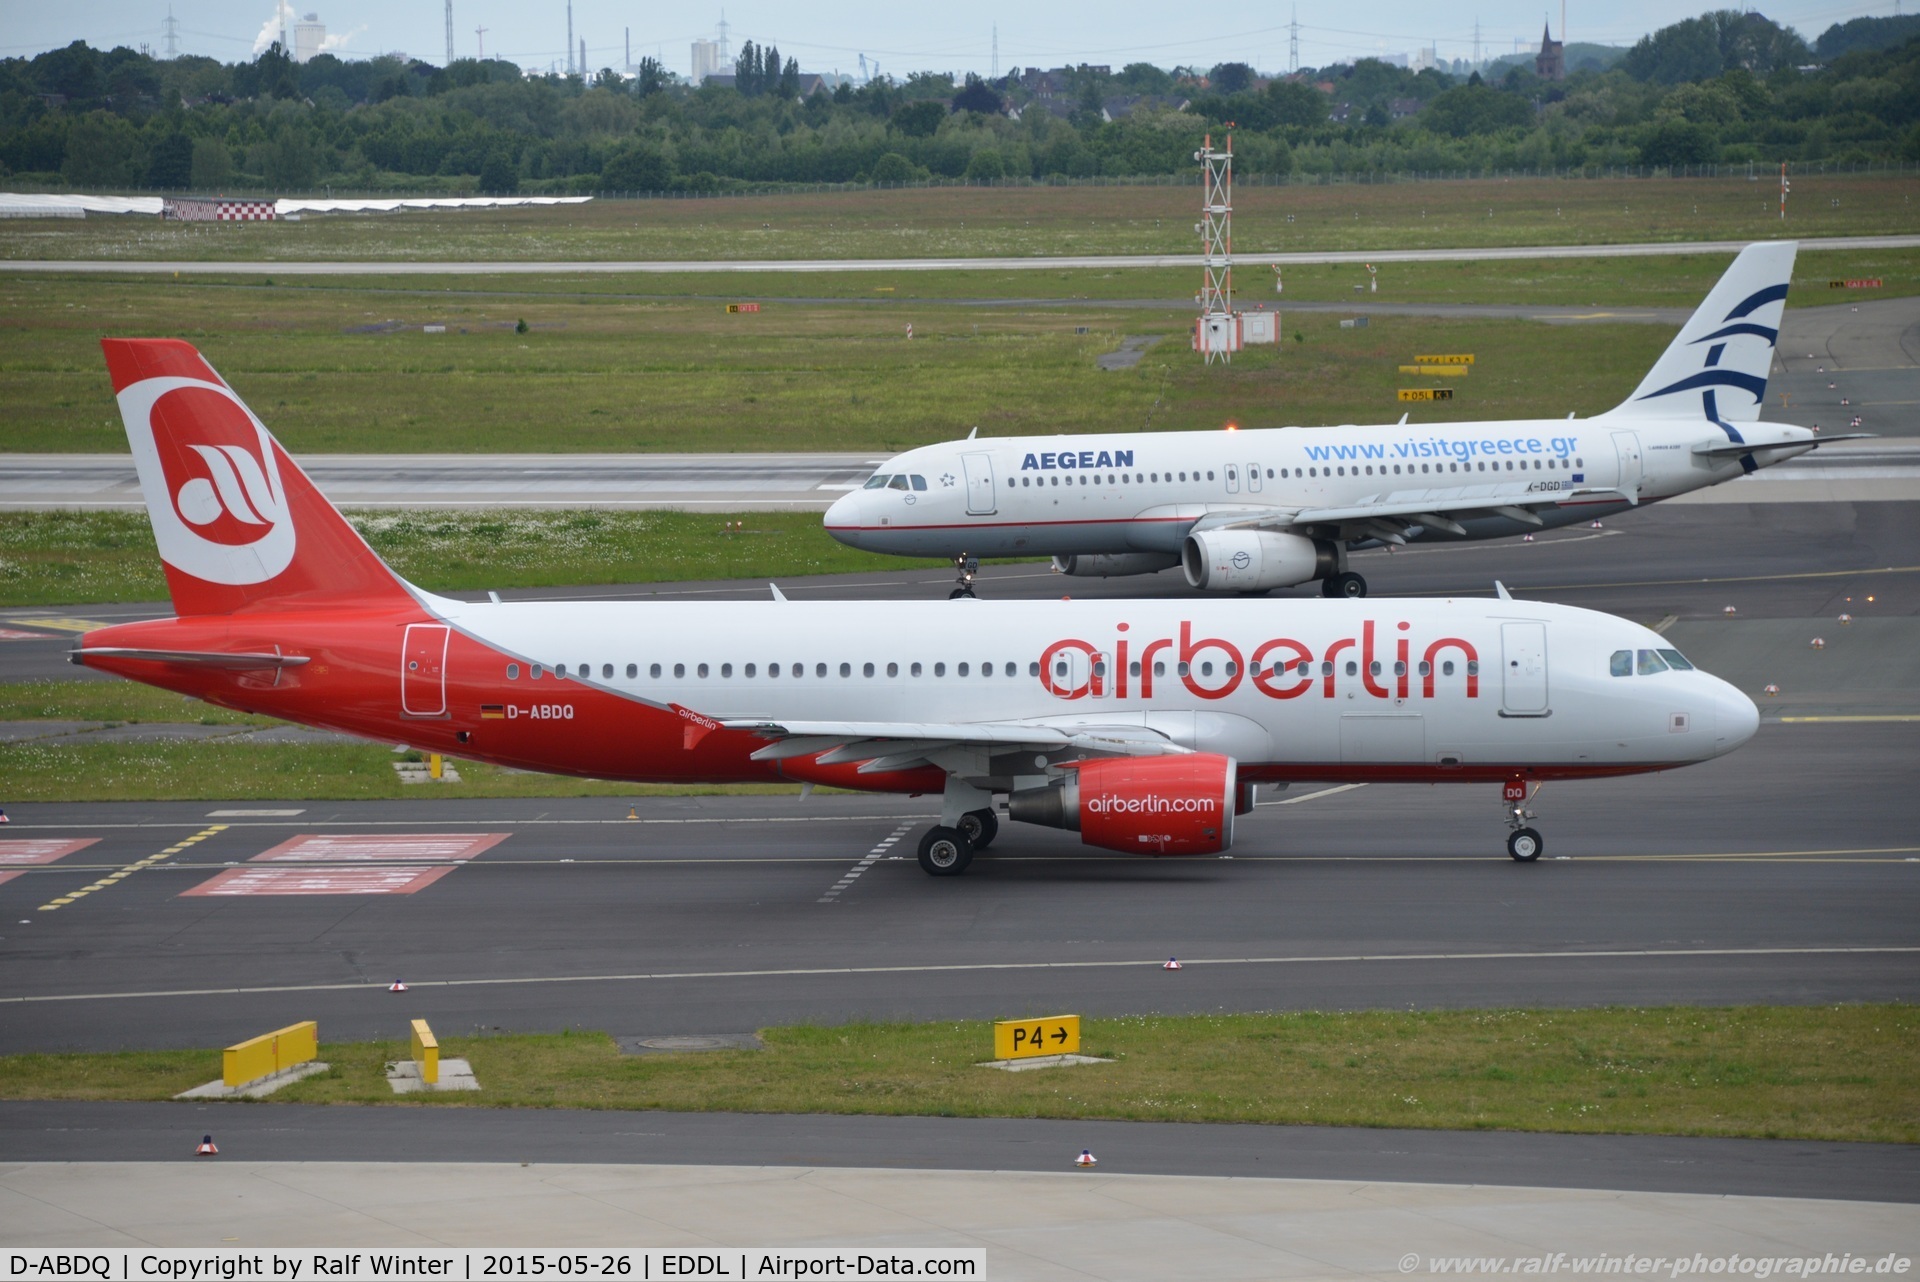 D-ABDQ, 2007 Airbus A320-214 C/N 3121, Airbus A320-214 - AB BER Air Berlin - 3121 - D-ABDQ - 26.05.2015 - DUS